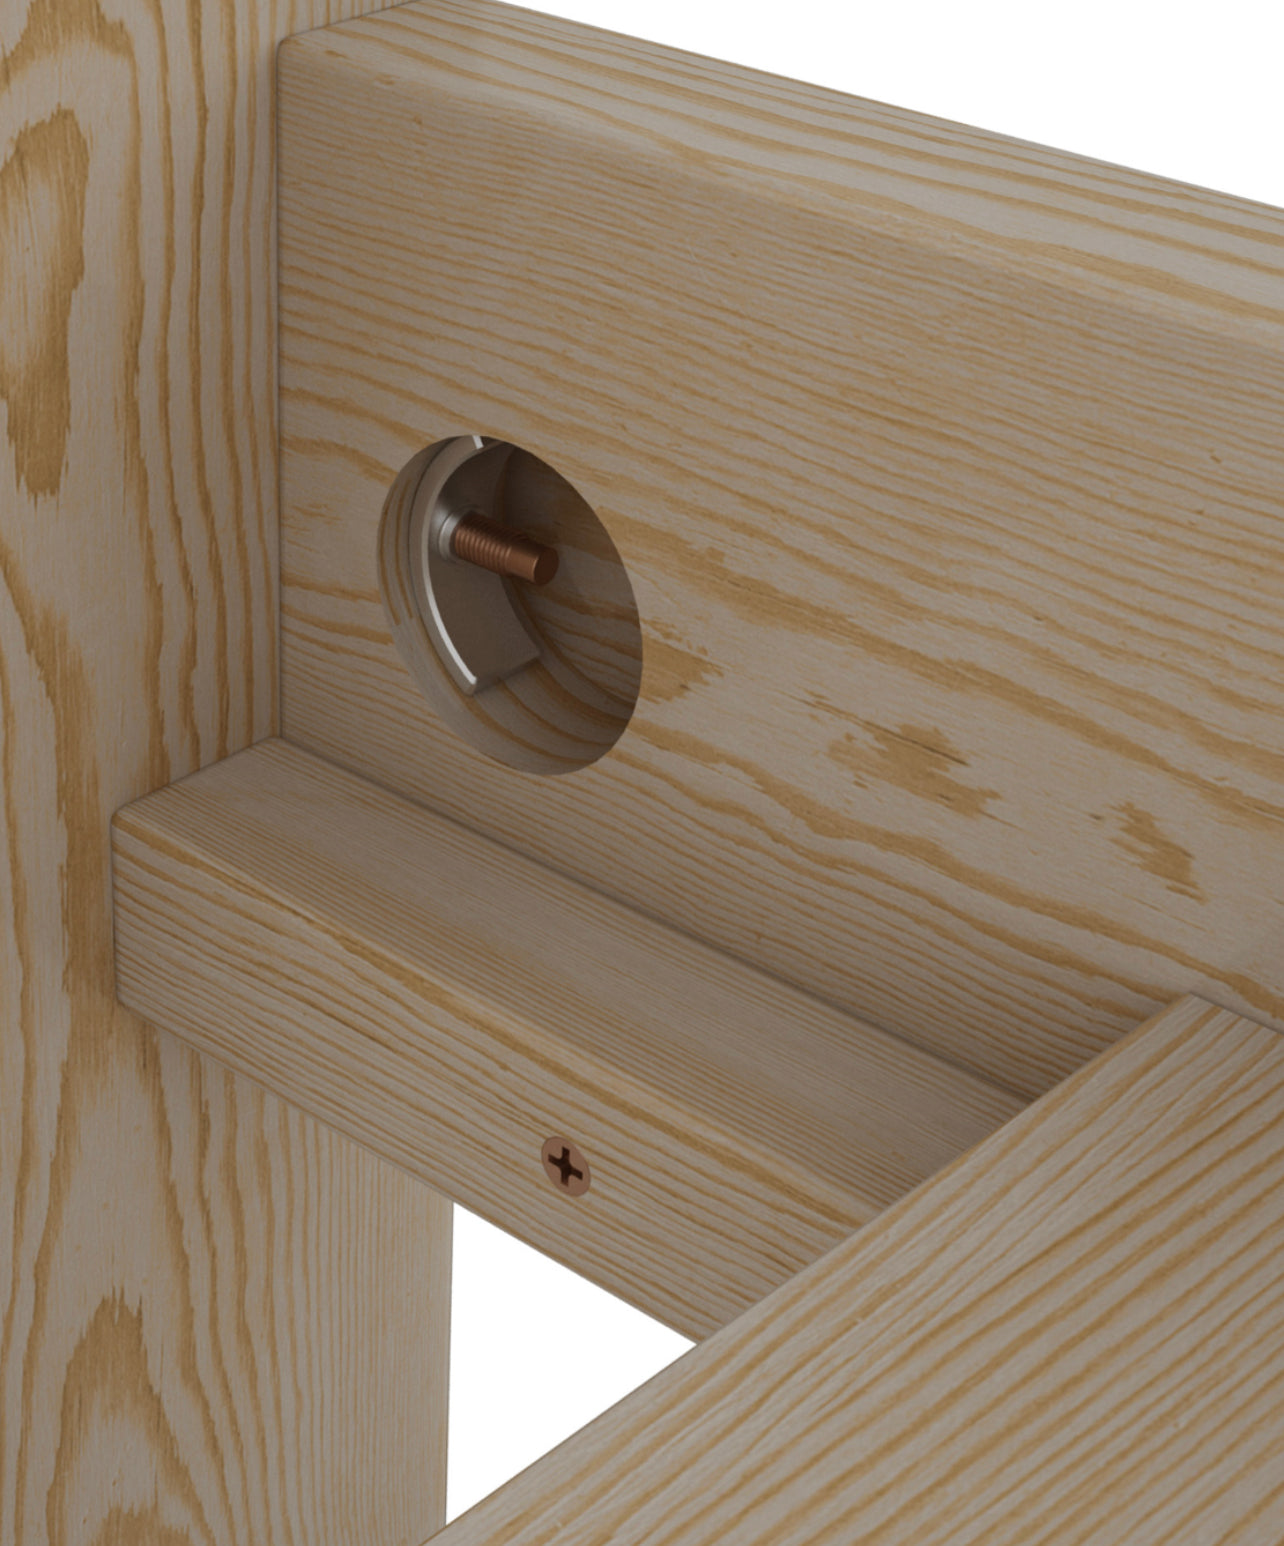 Wooden-bed-frame-Eta-Nodax-strong